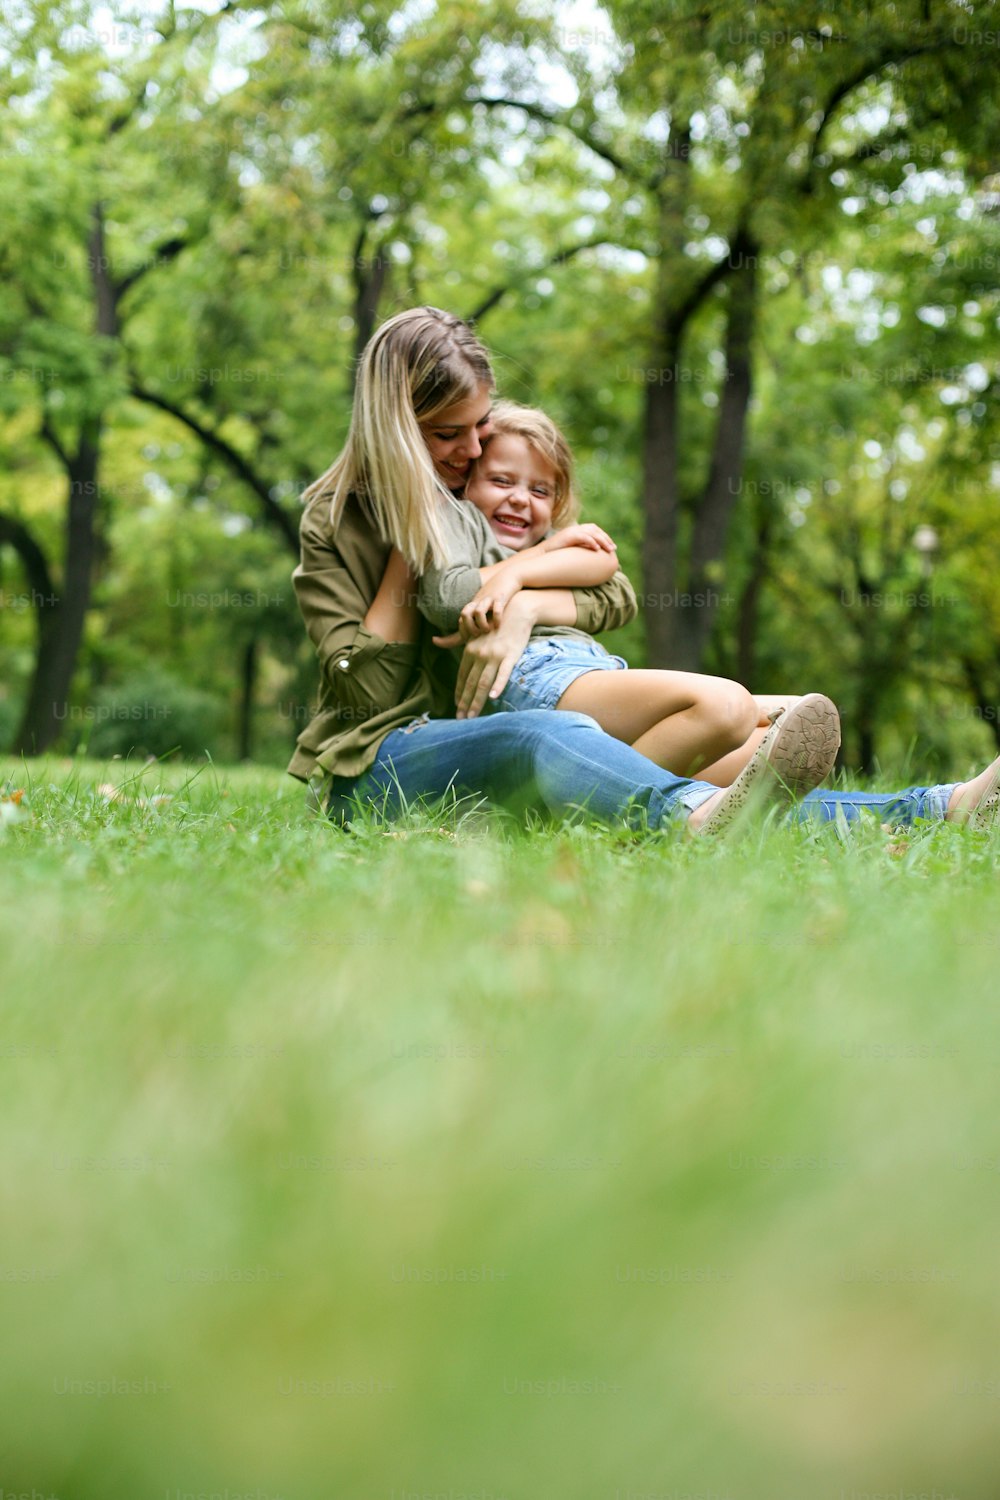 어머니 무릎에 앉아 있는 어린 소녀. 풀밭에 앉아 있는 딸과 함께 쾌활한 어머니. 복사 공간.